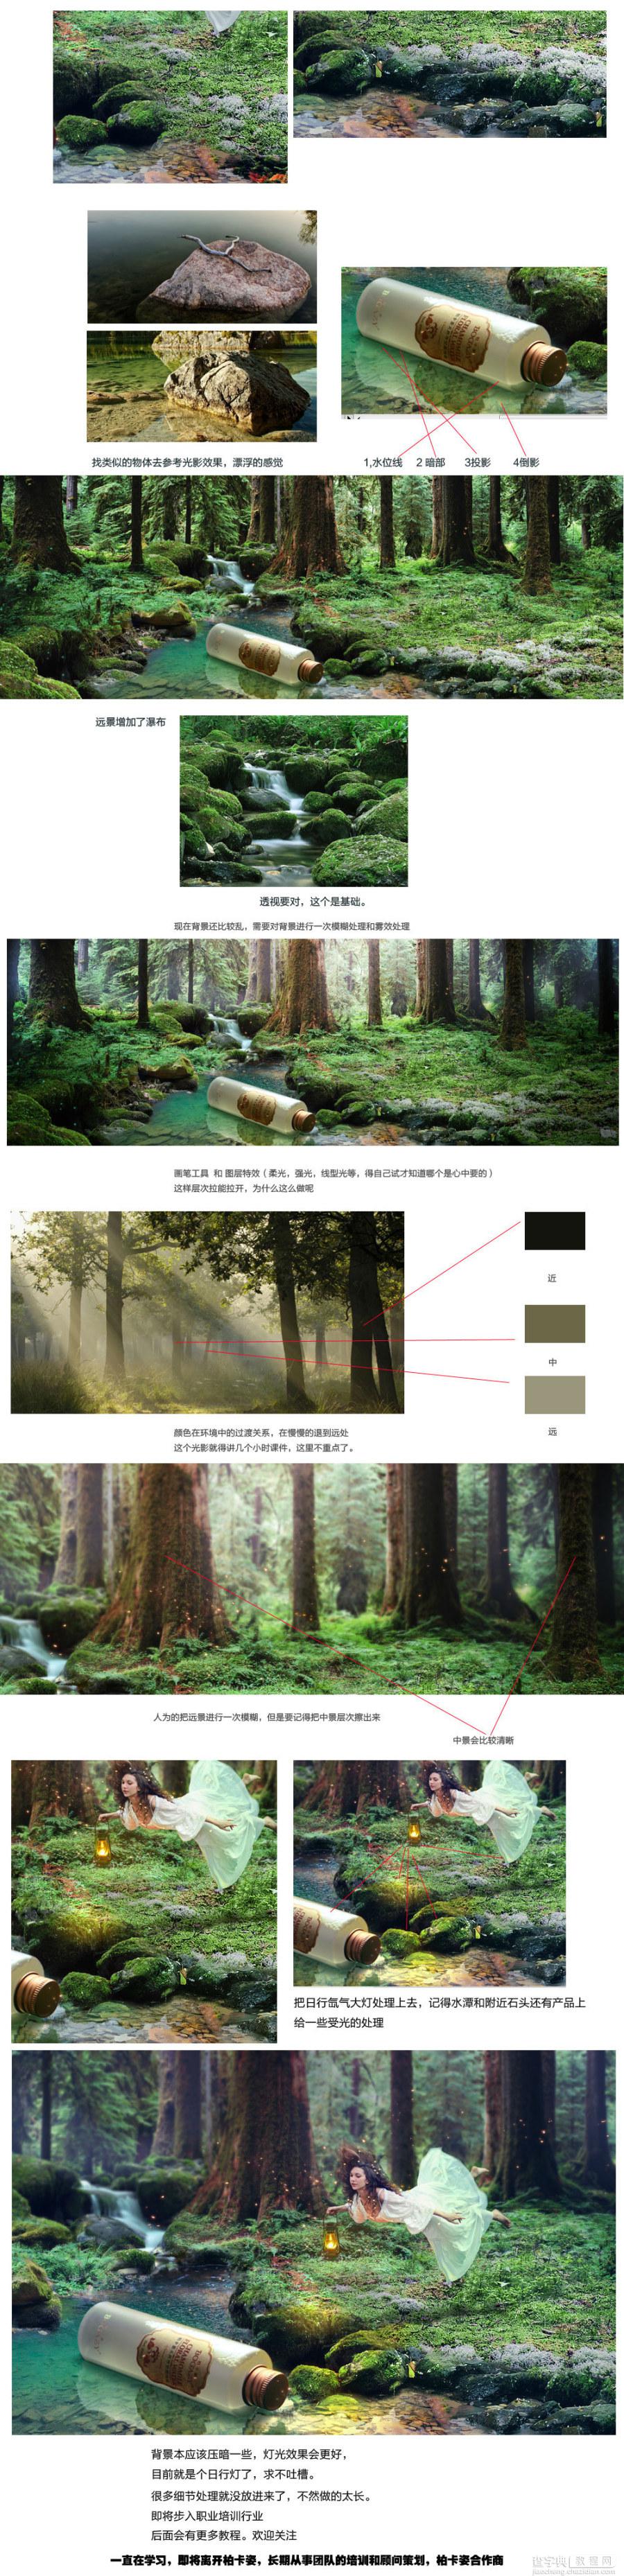 photoshop合成漂亮的森林梦幻场景2